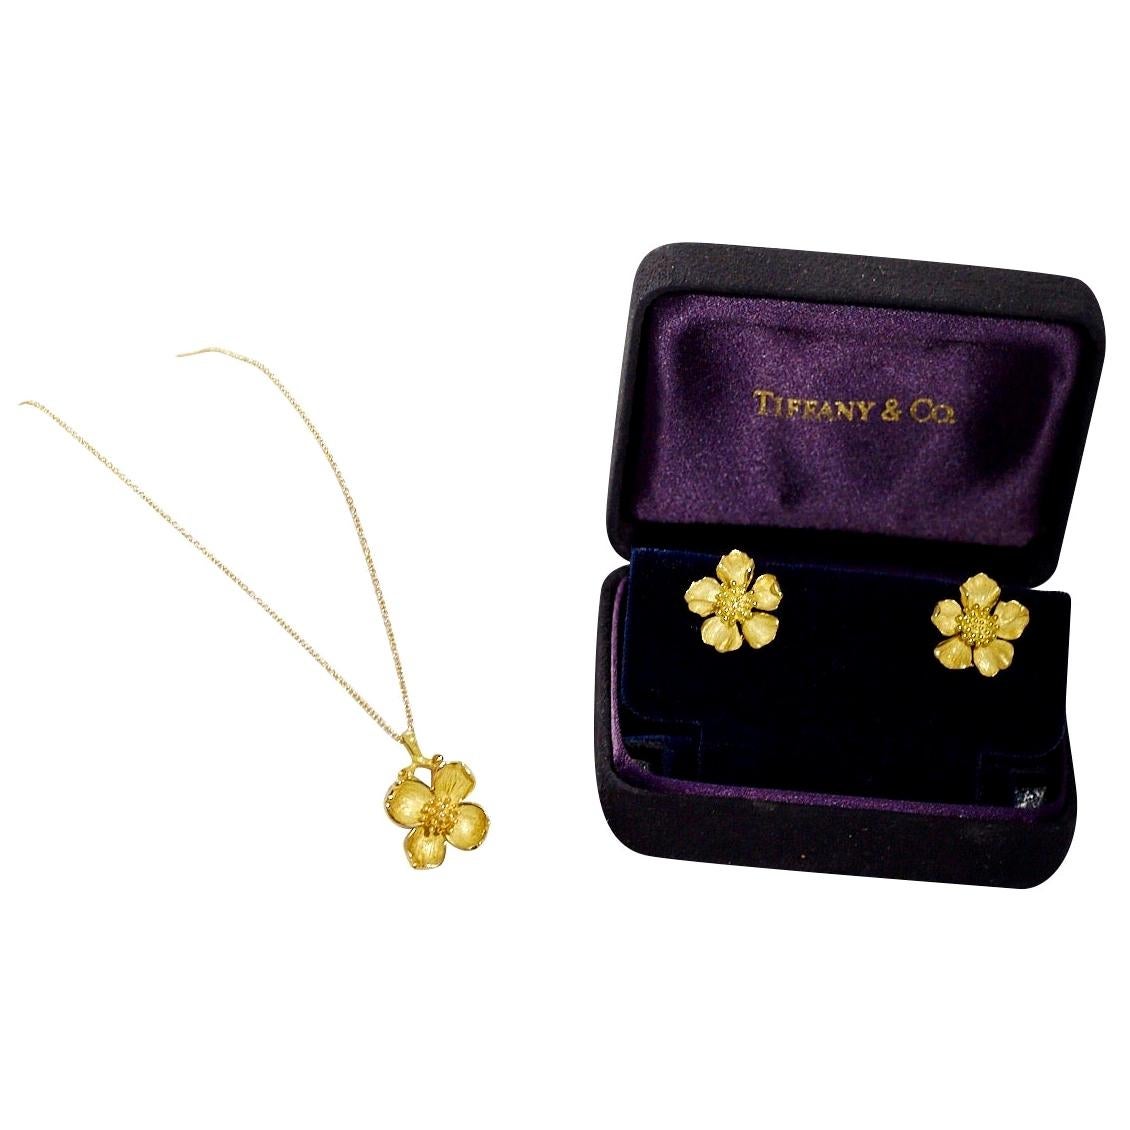 Tiffany & Co. 18 Karat Gold Necklace Earrings Flower Motif Necklace Earrings Set